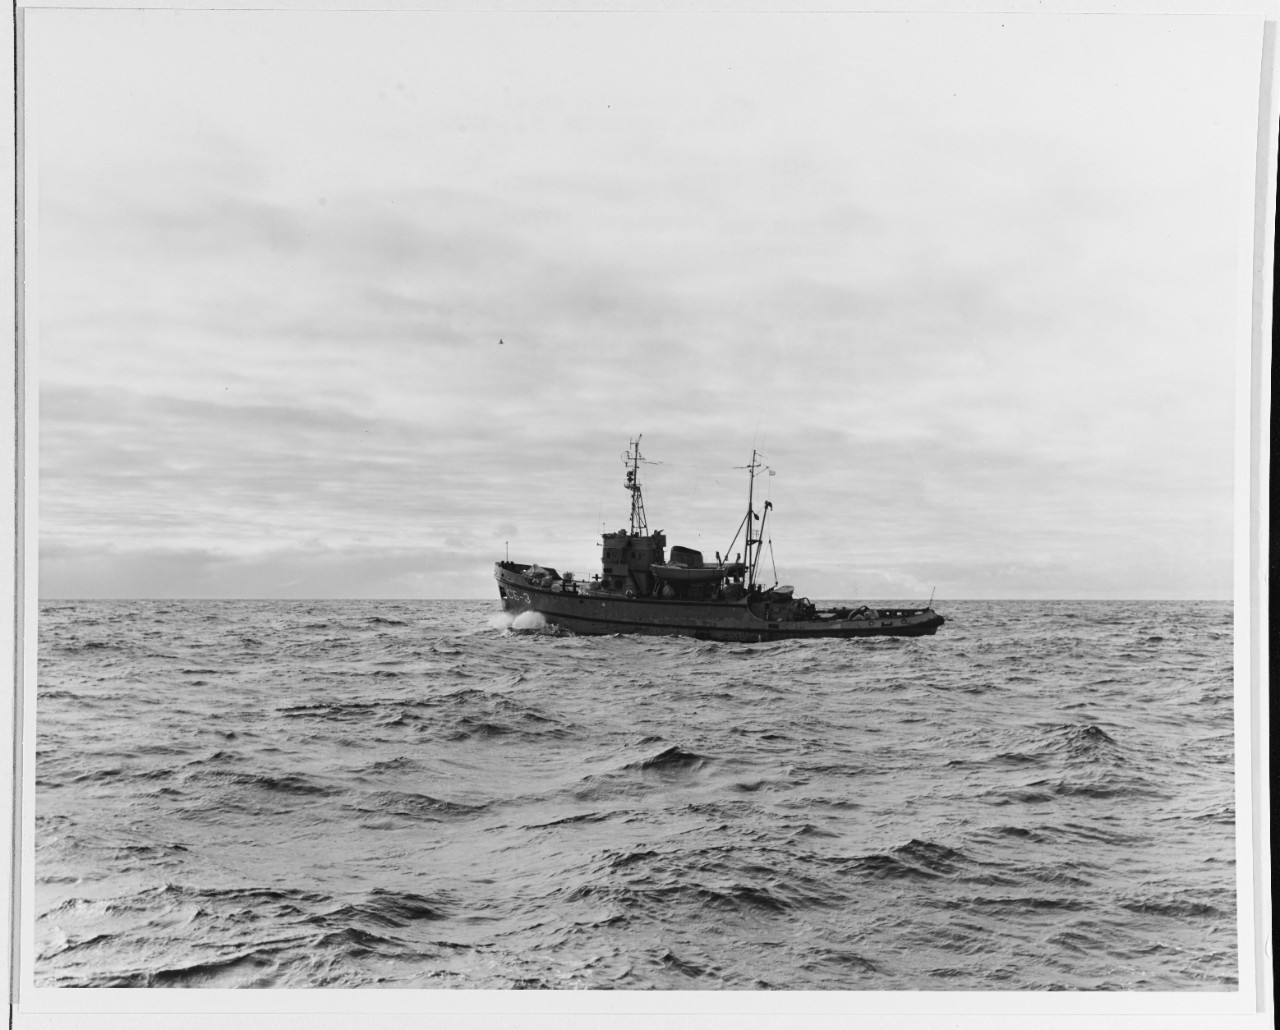 SB-3 Soviet Salvage Tug